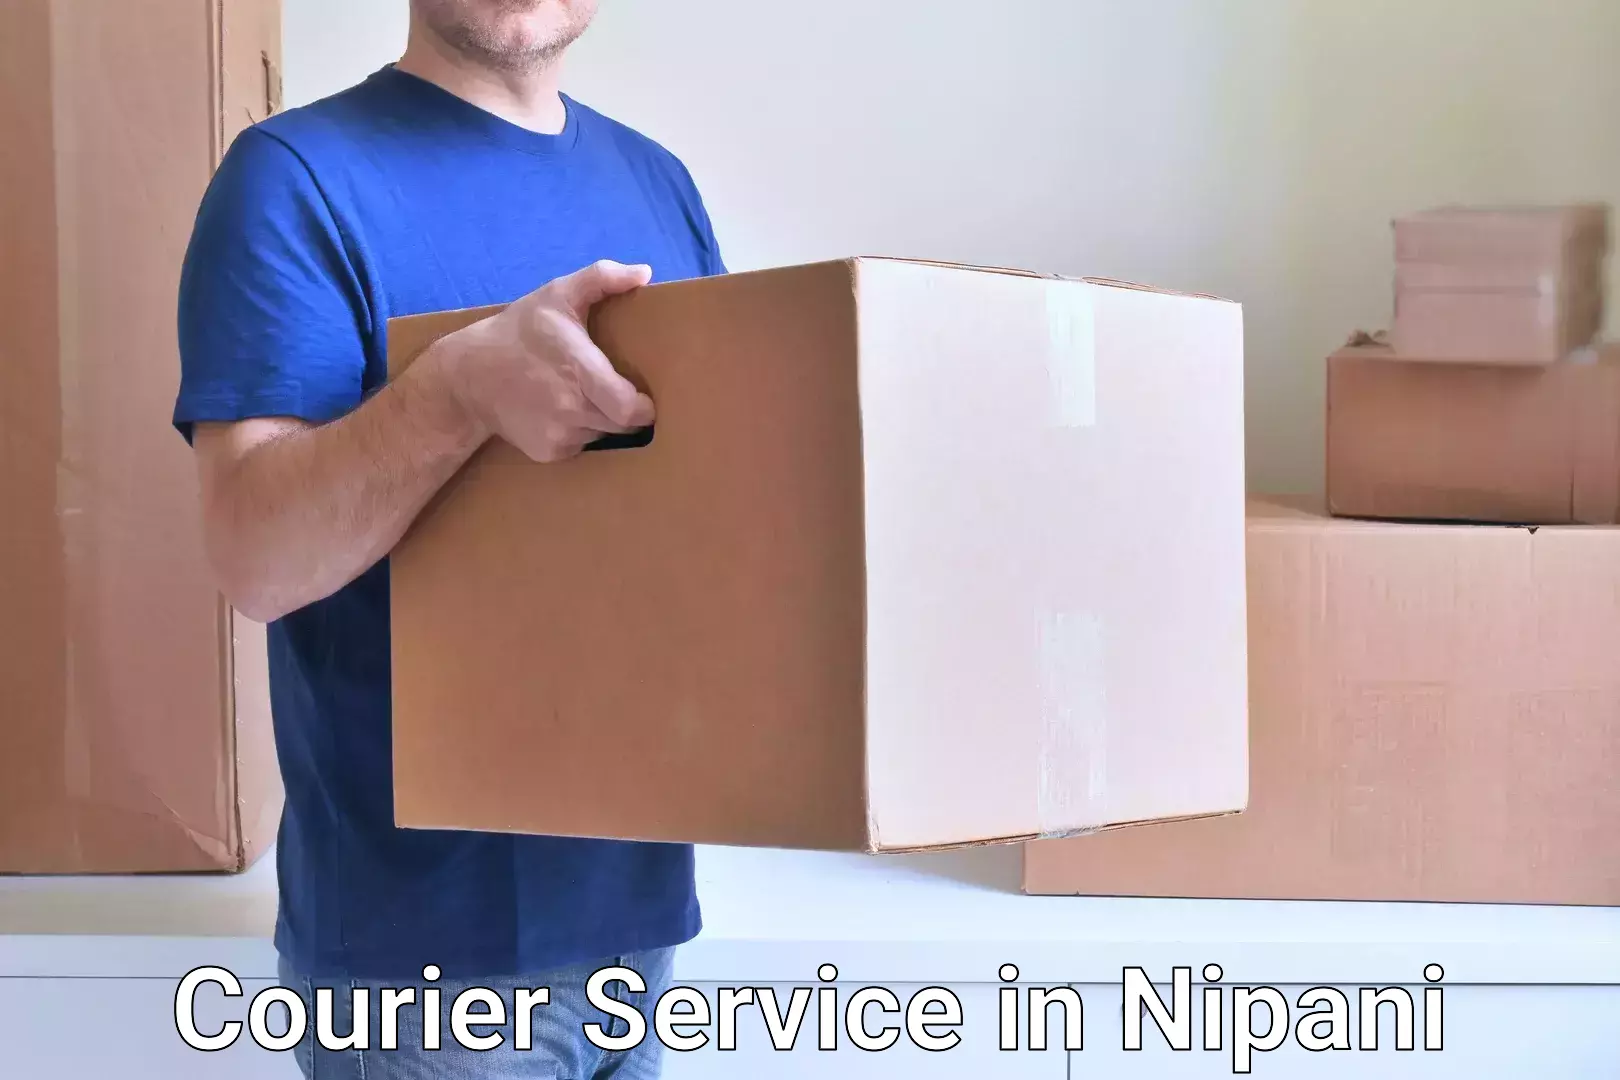 Global shipping solutions in Nipani